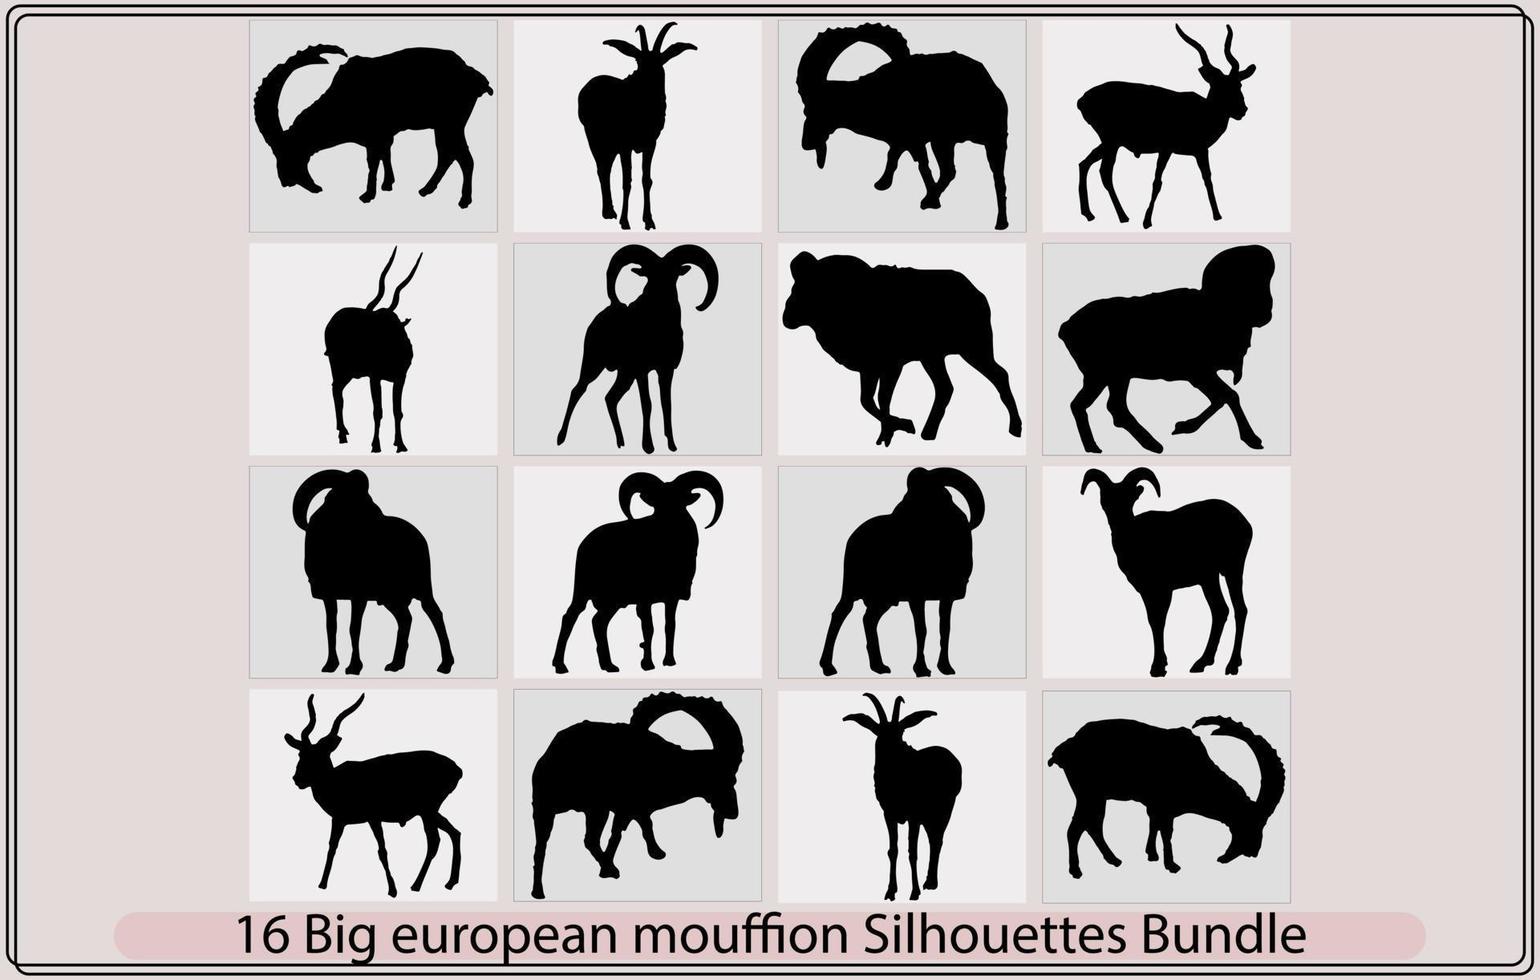 groß europäisch Mufflon Silhouette Bündel, groß europäisch Mufflon Abbildung, groß europäisch Mufflon Vektor, vektor